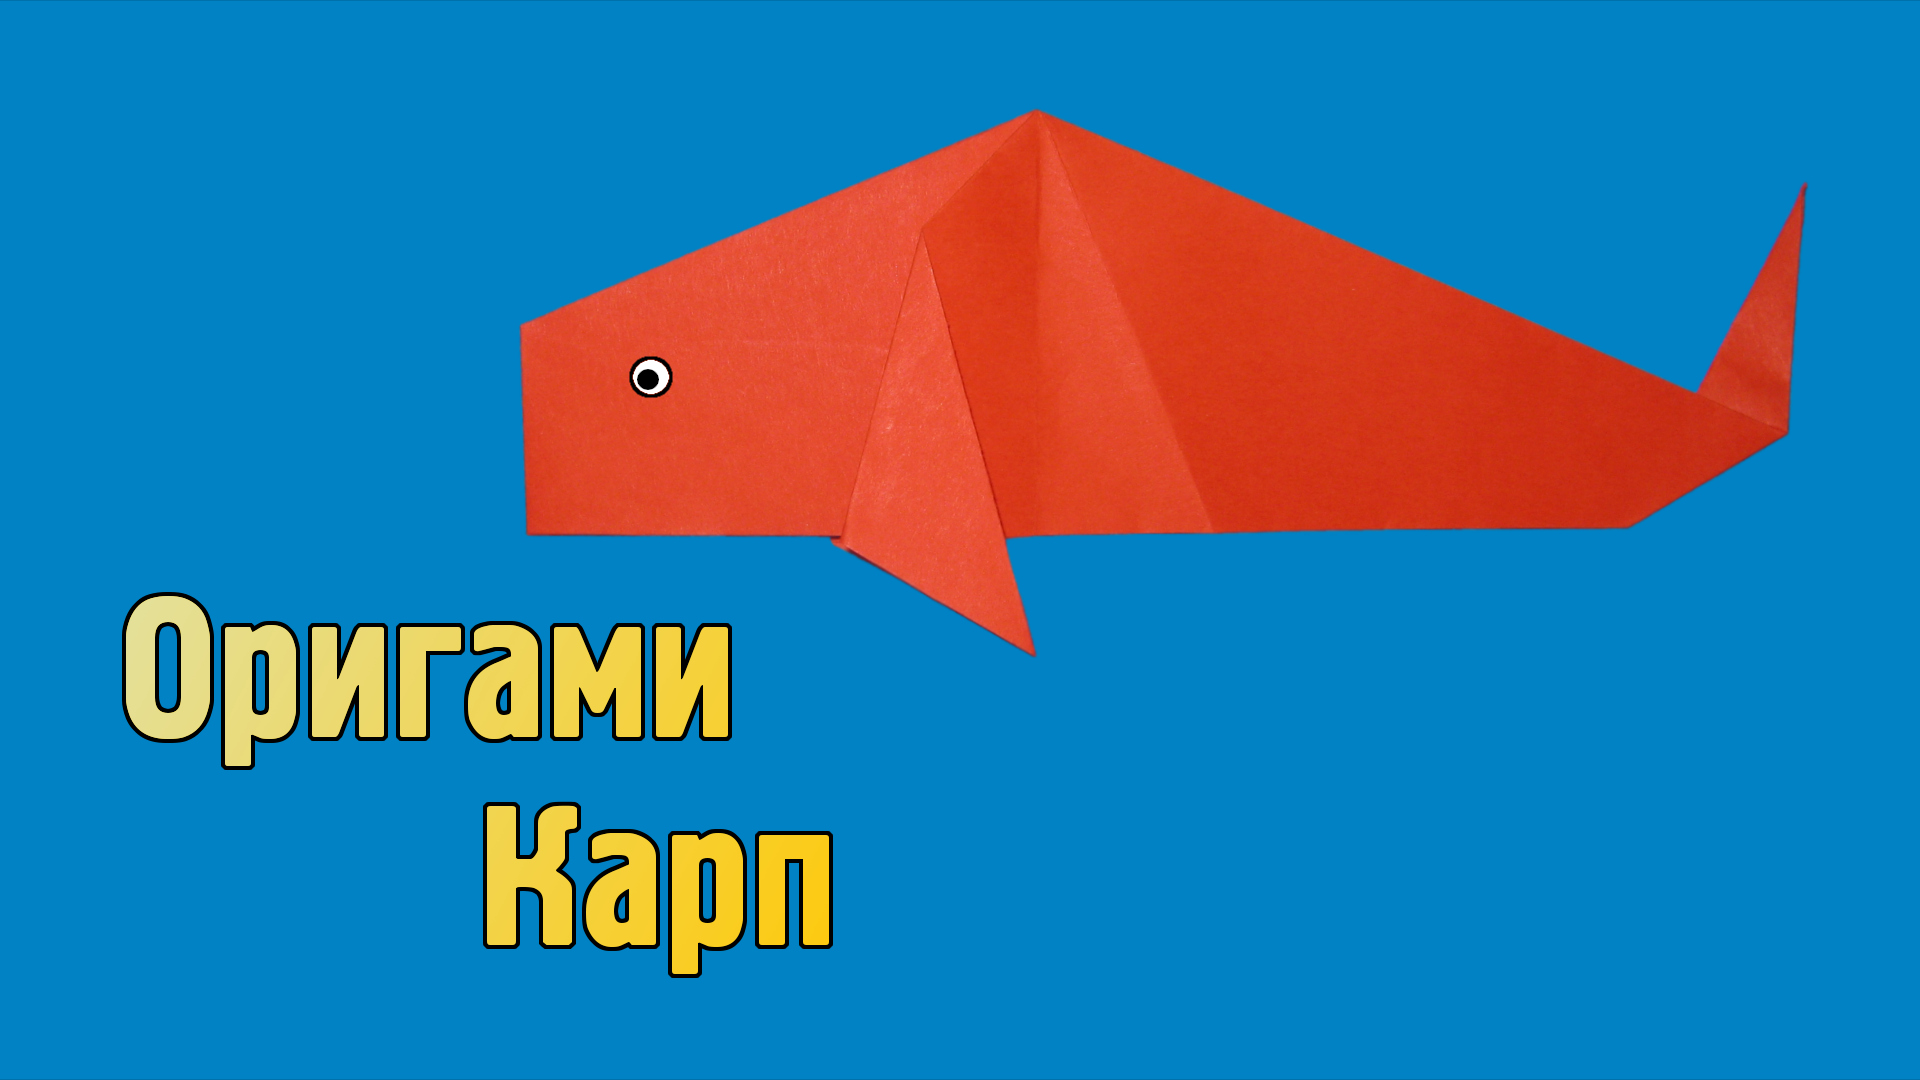 Как сделать Рыбку из бумаги своими руками | Оригами Карп для детей без клея из одного листа